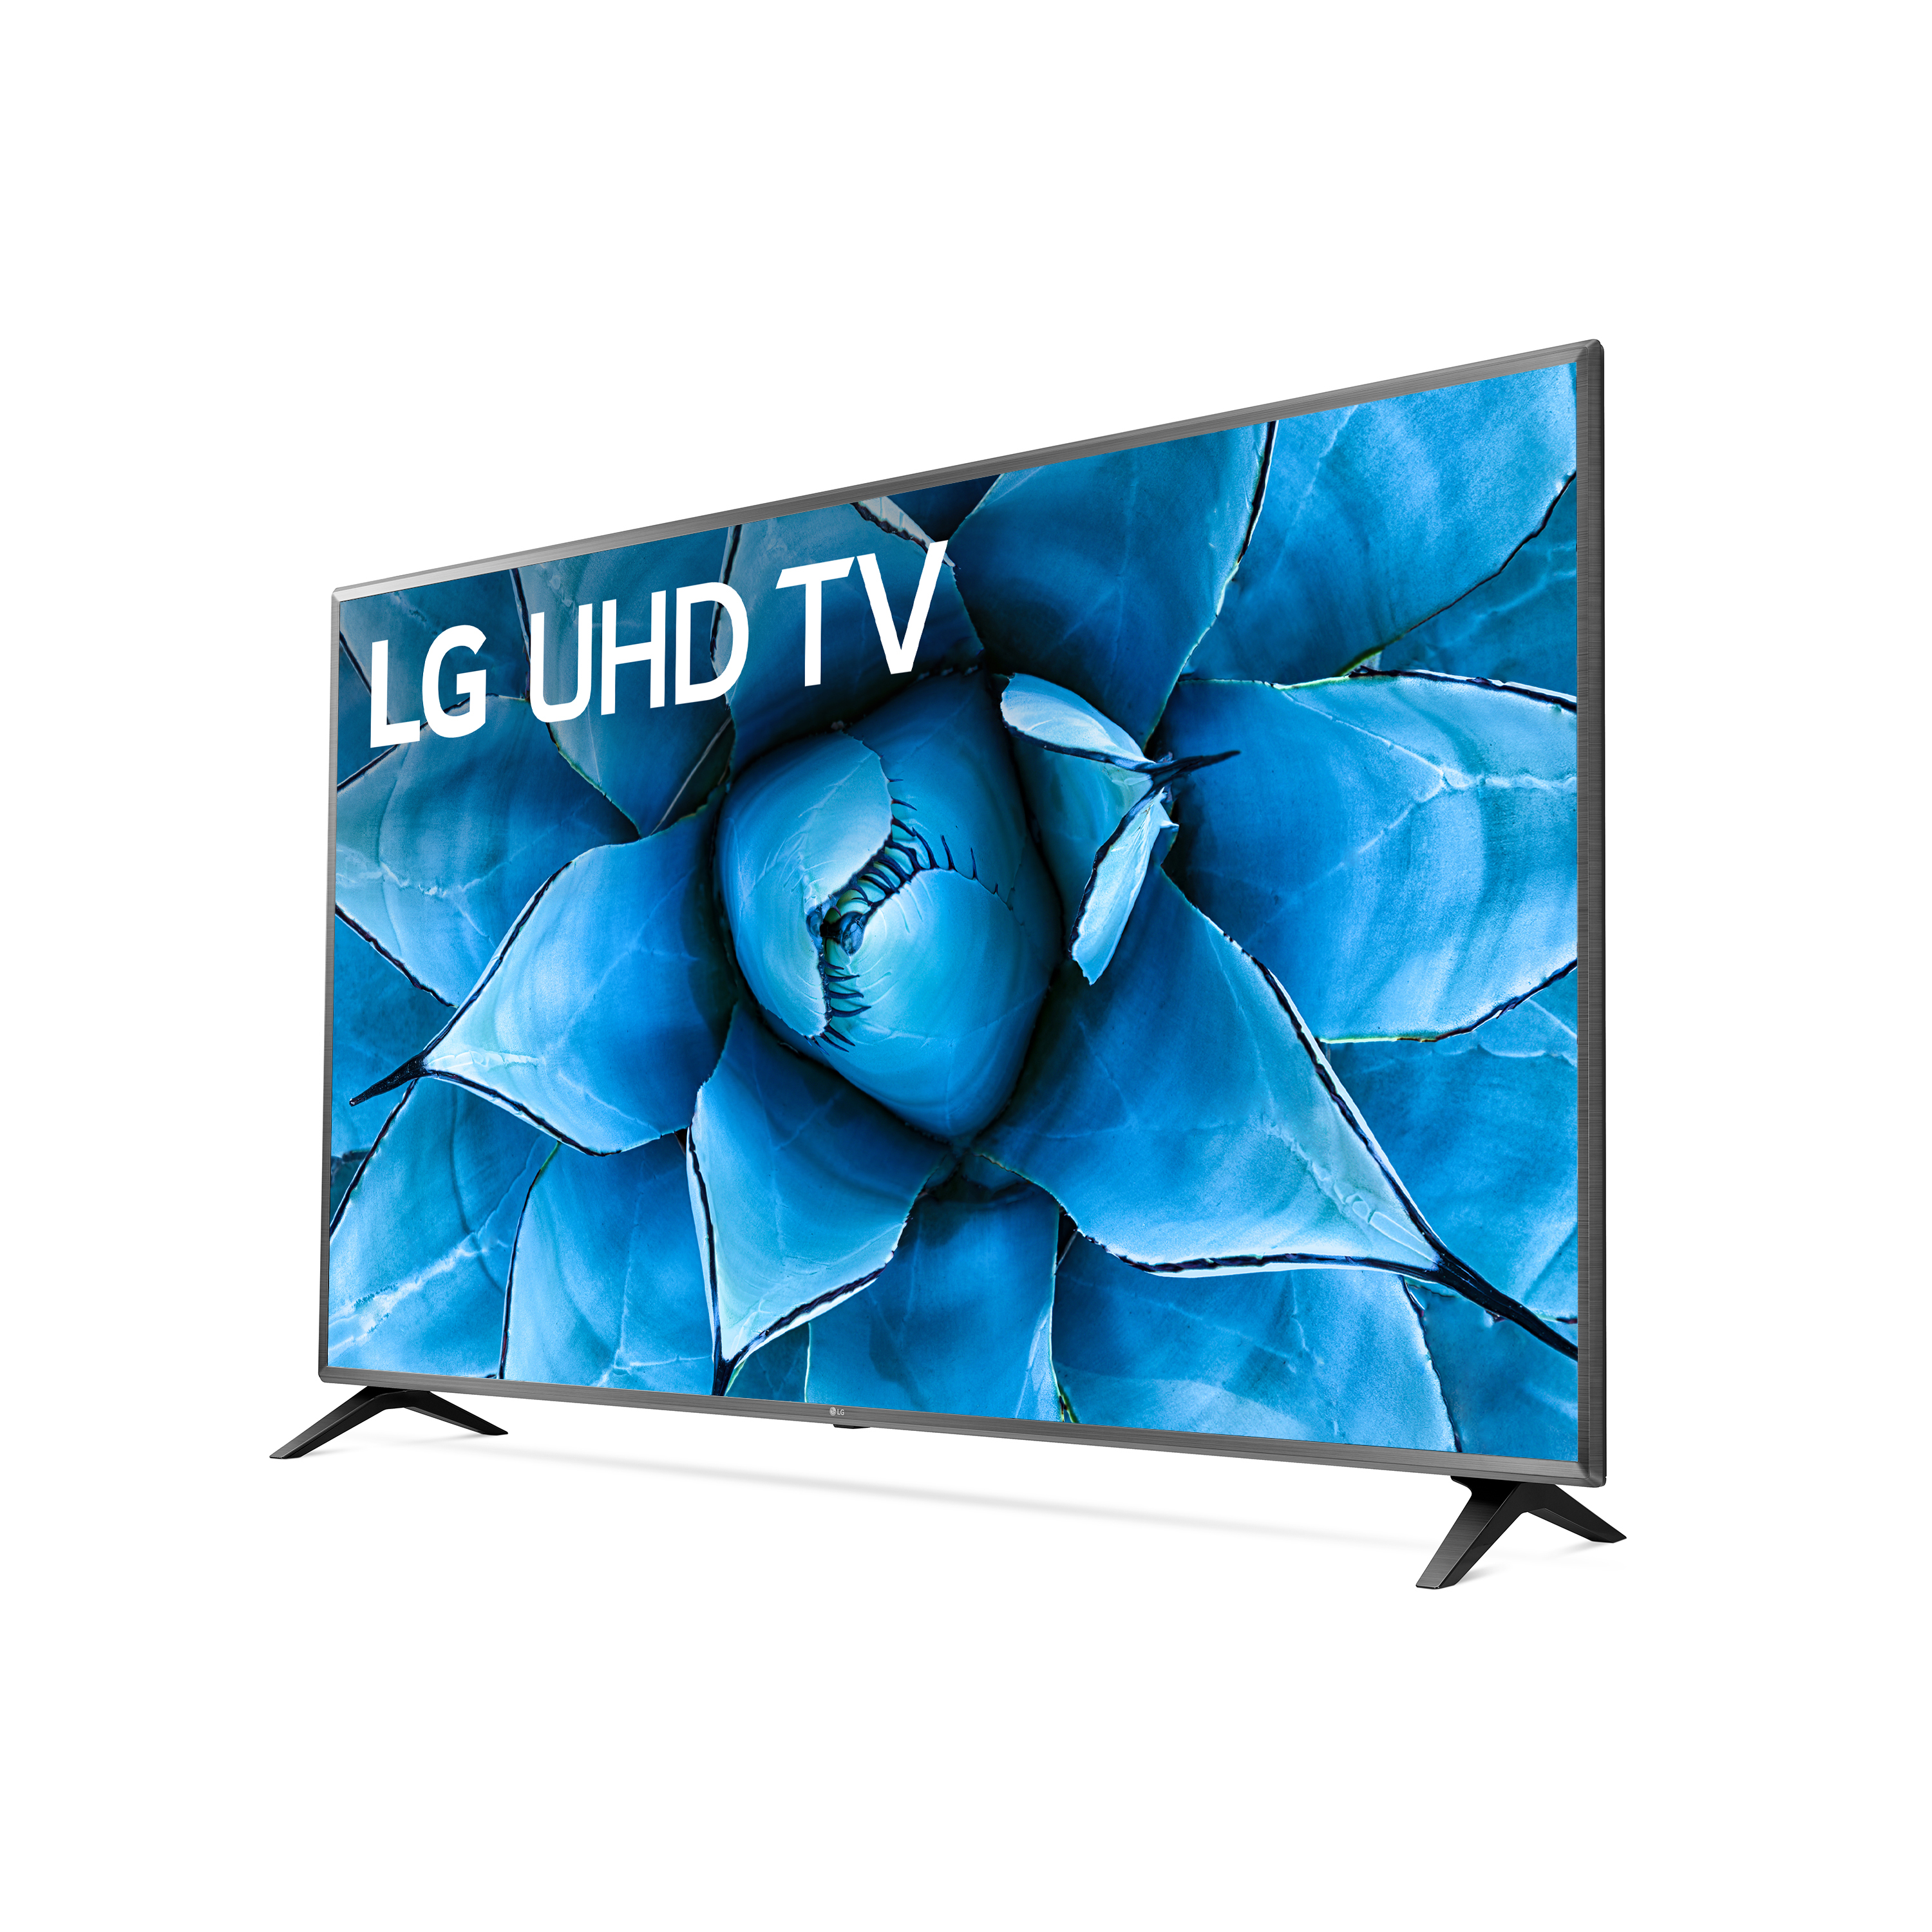 LG 75" Class 4K UHD 2160P Smart TV 75UN7370PUE 2020 Model - image 5 of 28